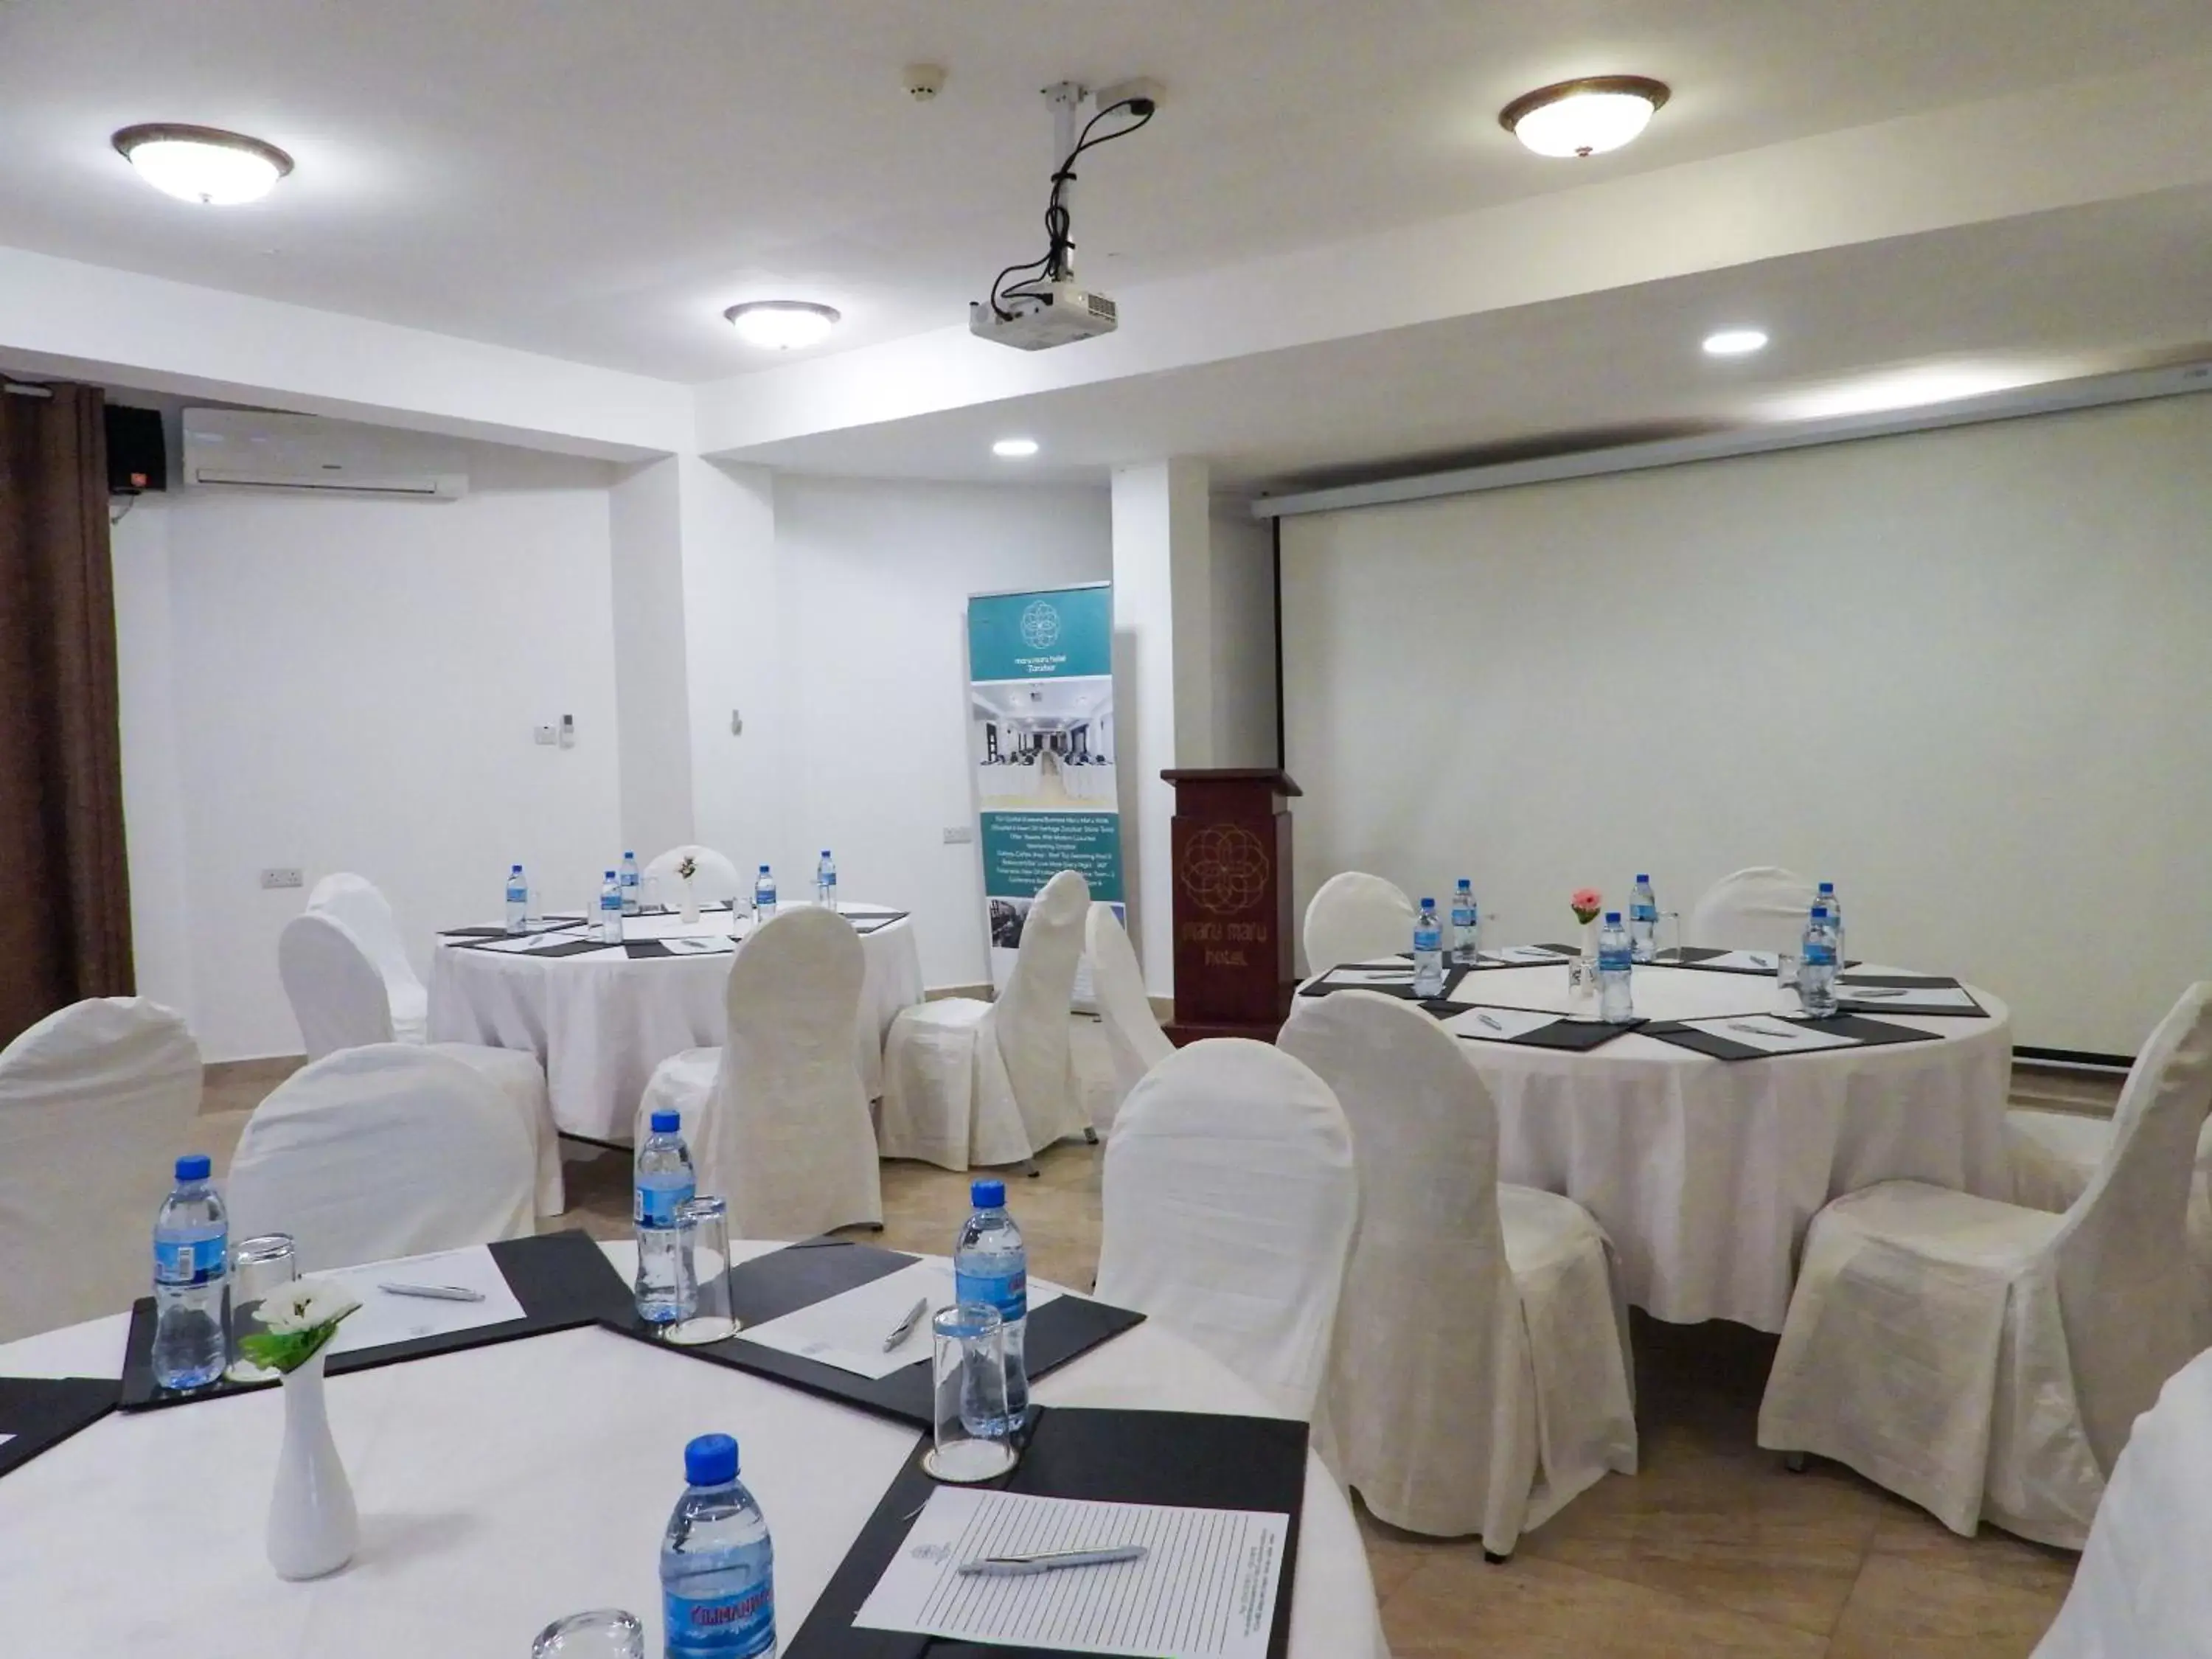 Meeting/conference room, Banquet Facilities in Maru Maru Hotel